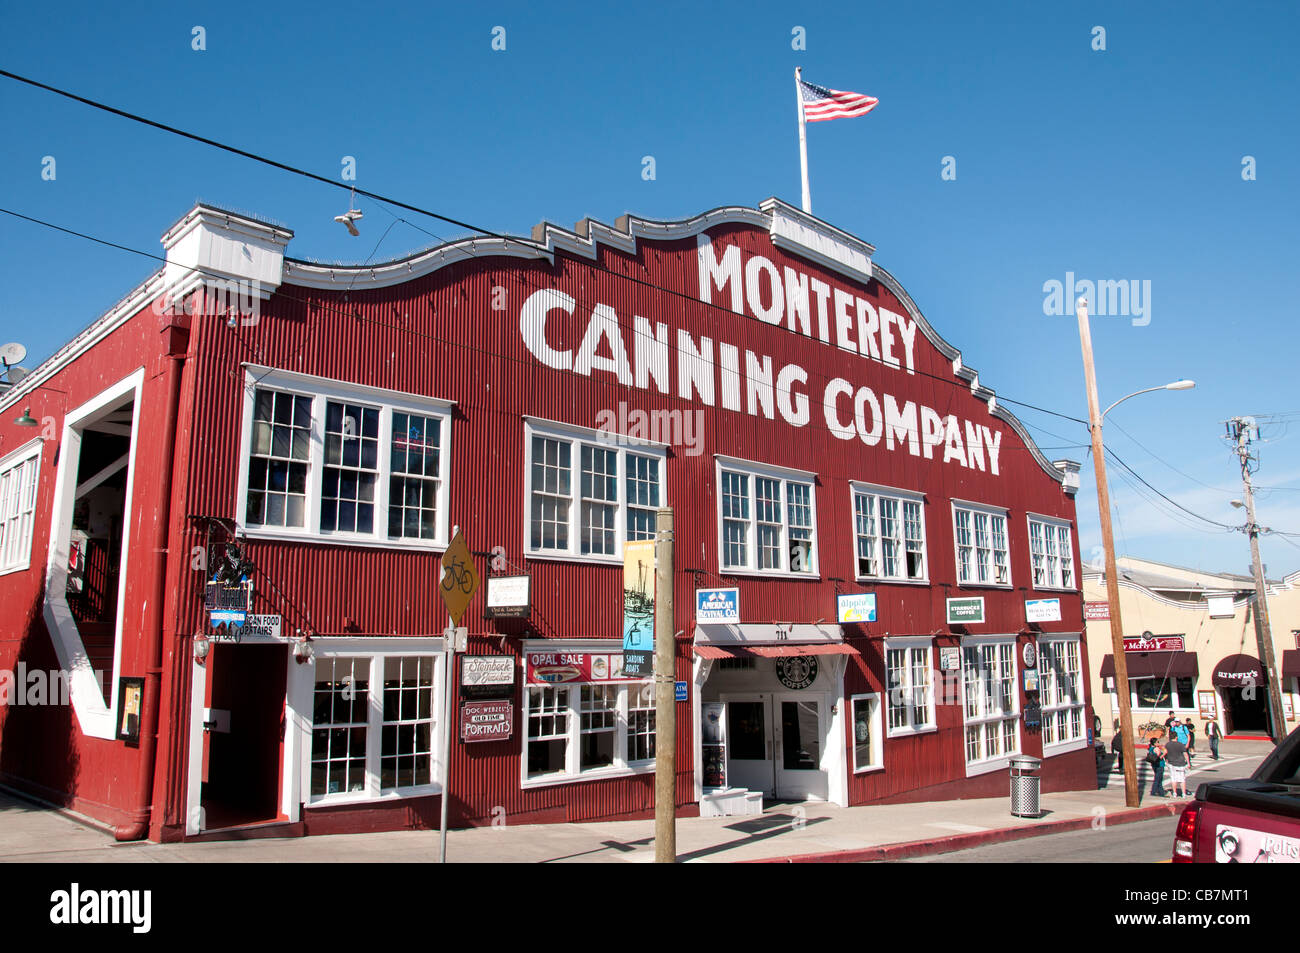 Monterey Canning Company Kalifornien Port Hafen USA amerikanische Vereinigte Staaten von Amerika Stockfoto